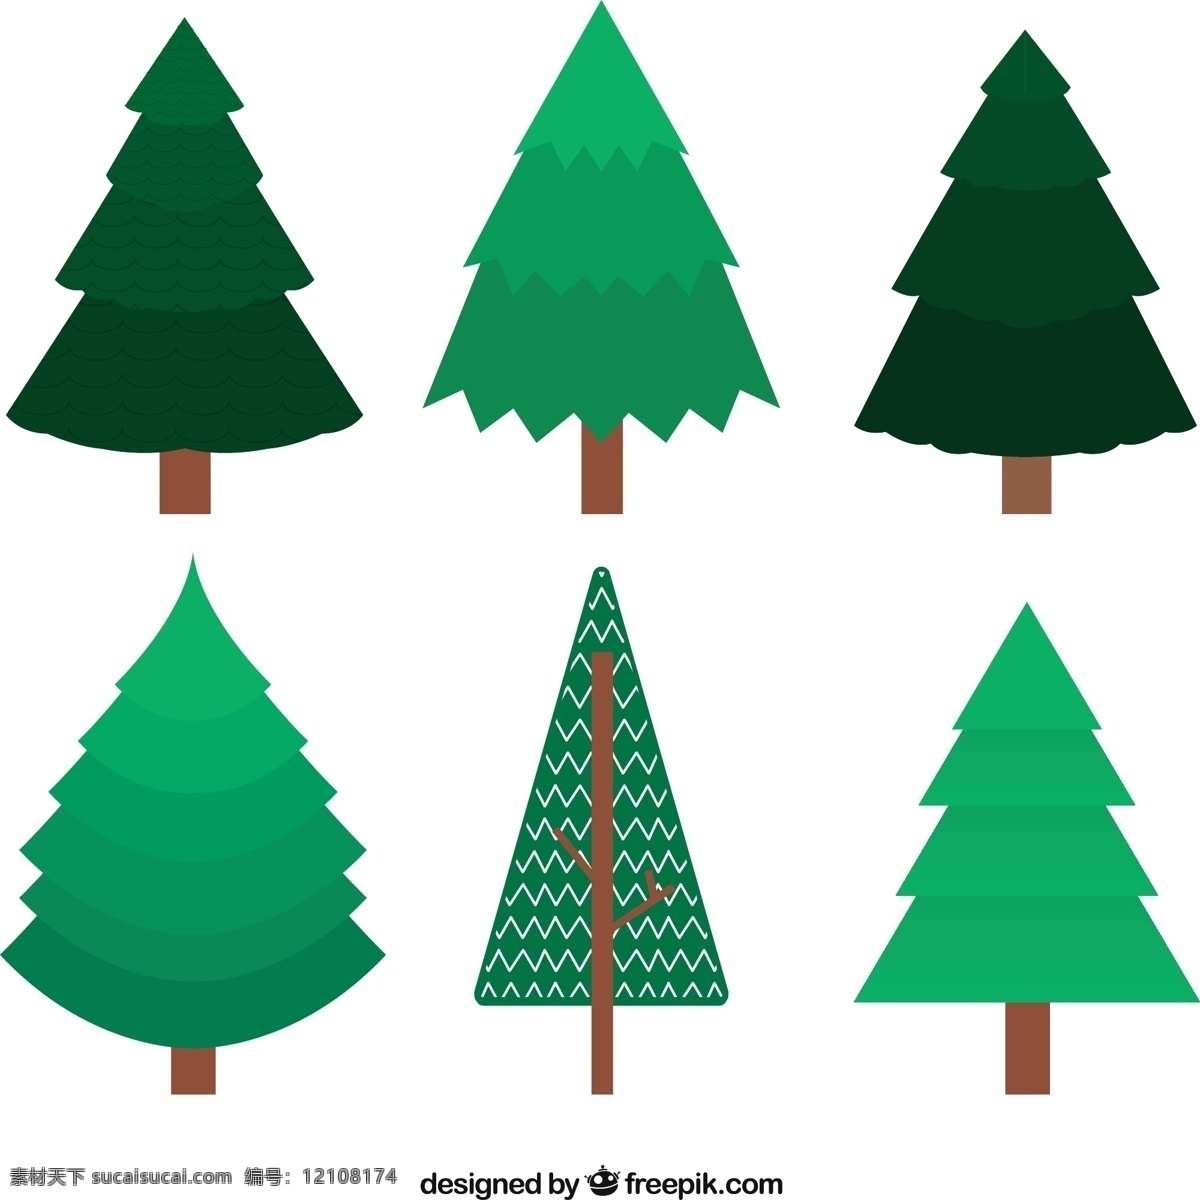 平面设计 中 绿色 圣诞树 圣诞快乐 冬天快乐 圣诞 节日庆祝 平坦 树木 节日快乐 季节 节日 快乐 十二月 白色